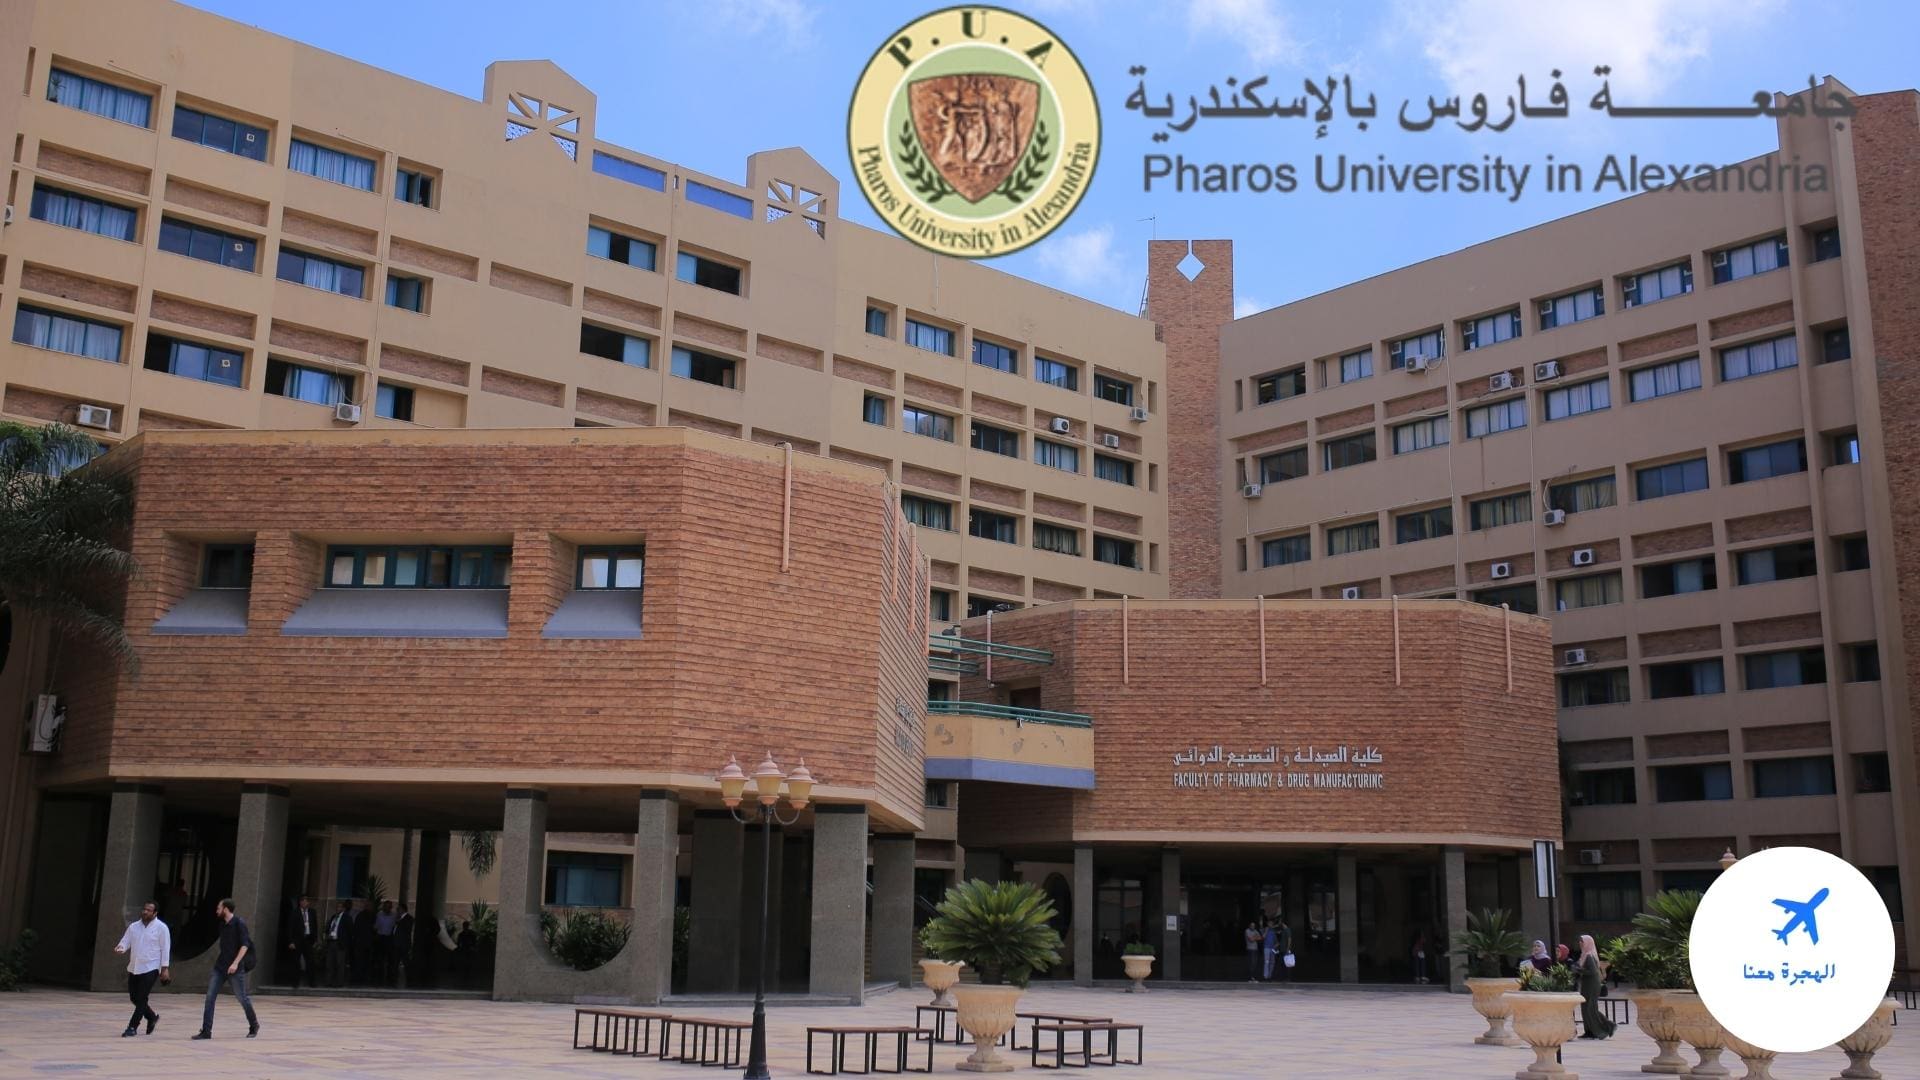 تخصصات جامعة فاروس بالاسكندرية